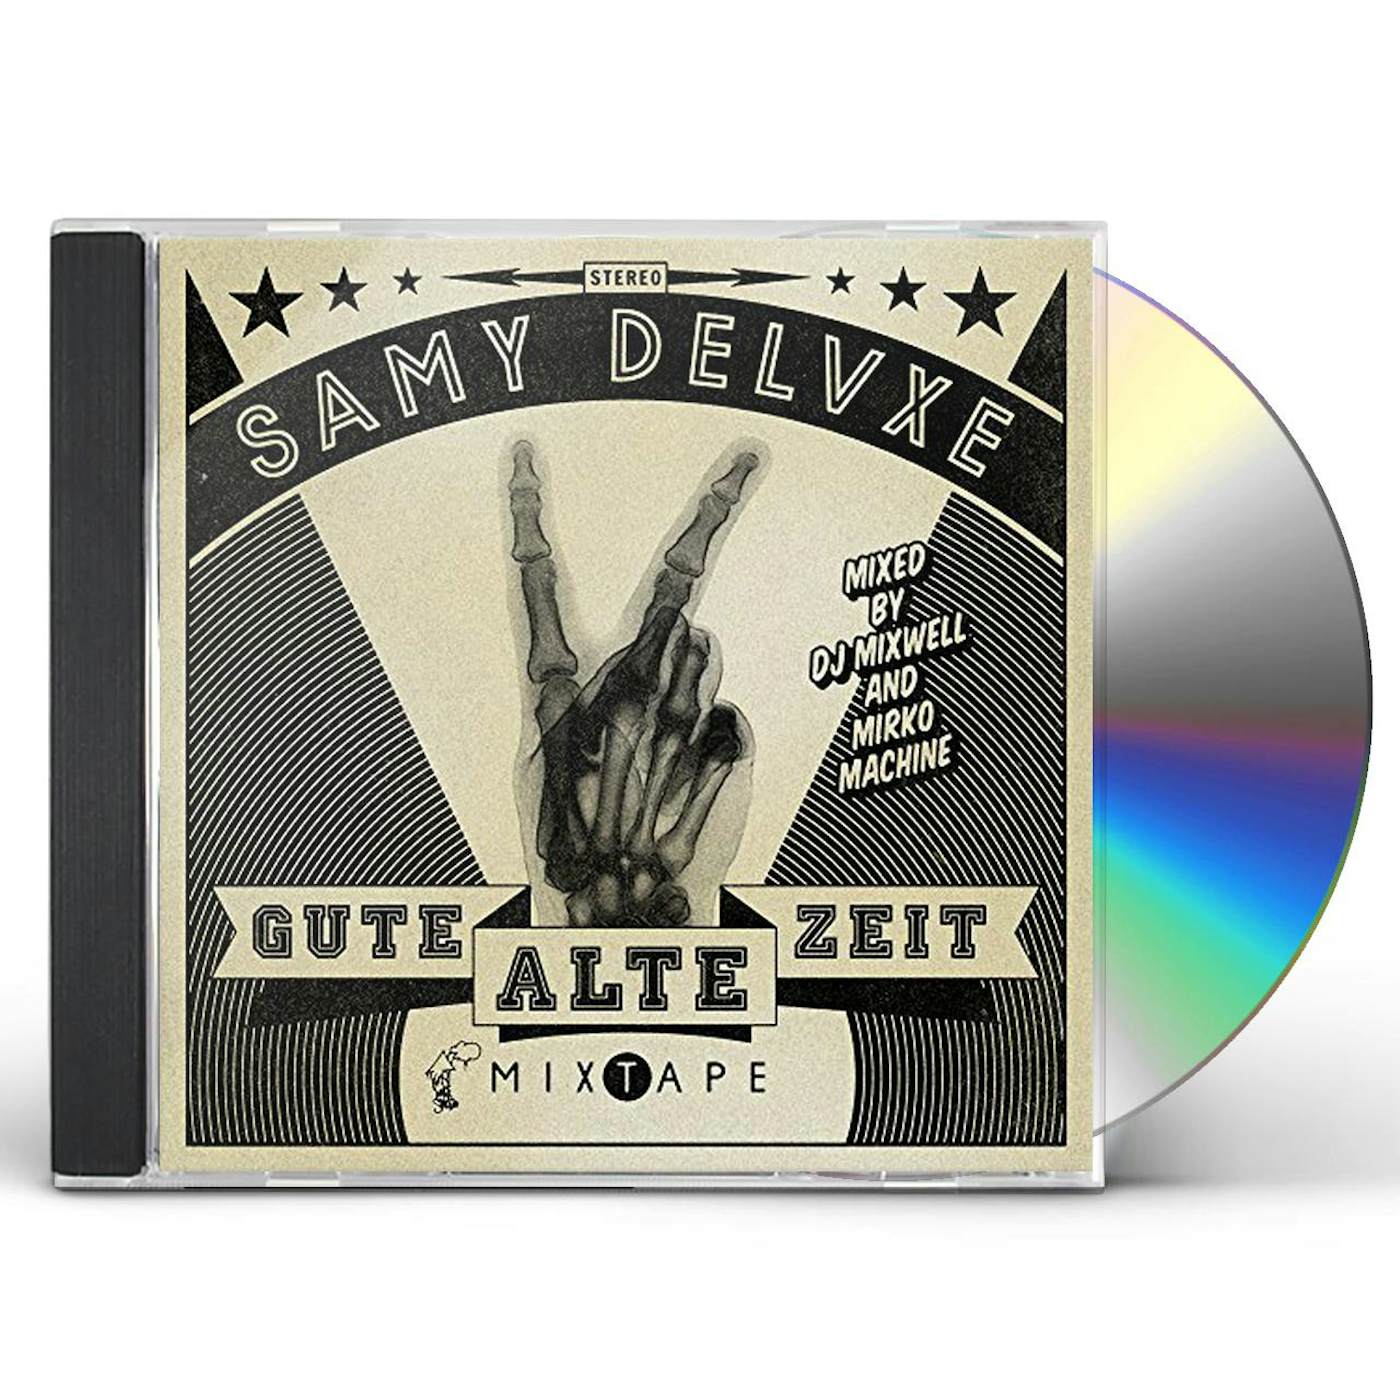 Samy Deluxe GUTE ALTE ZEIT CD